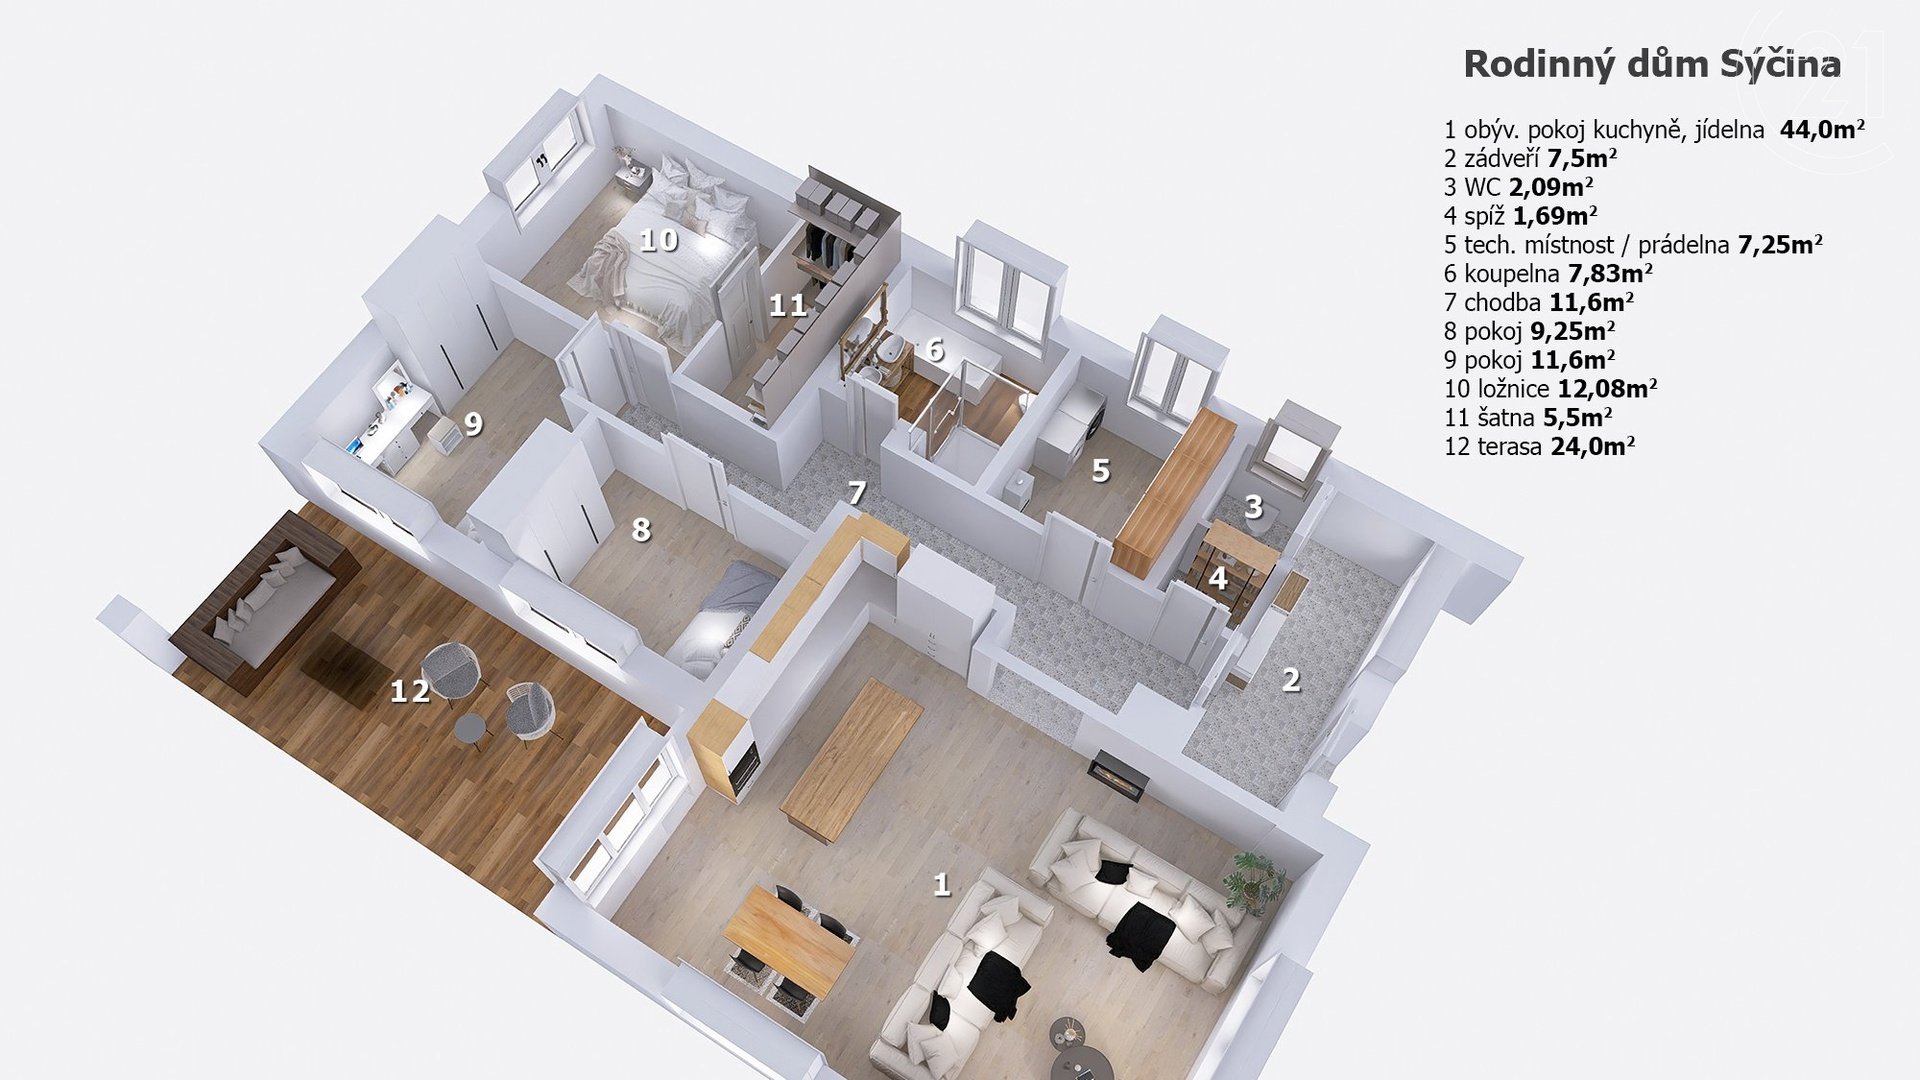 Pronájem rodinného domu 120,39 m² s velkým pozemkem 14 681 m², Dobrovice - Sýčina